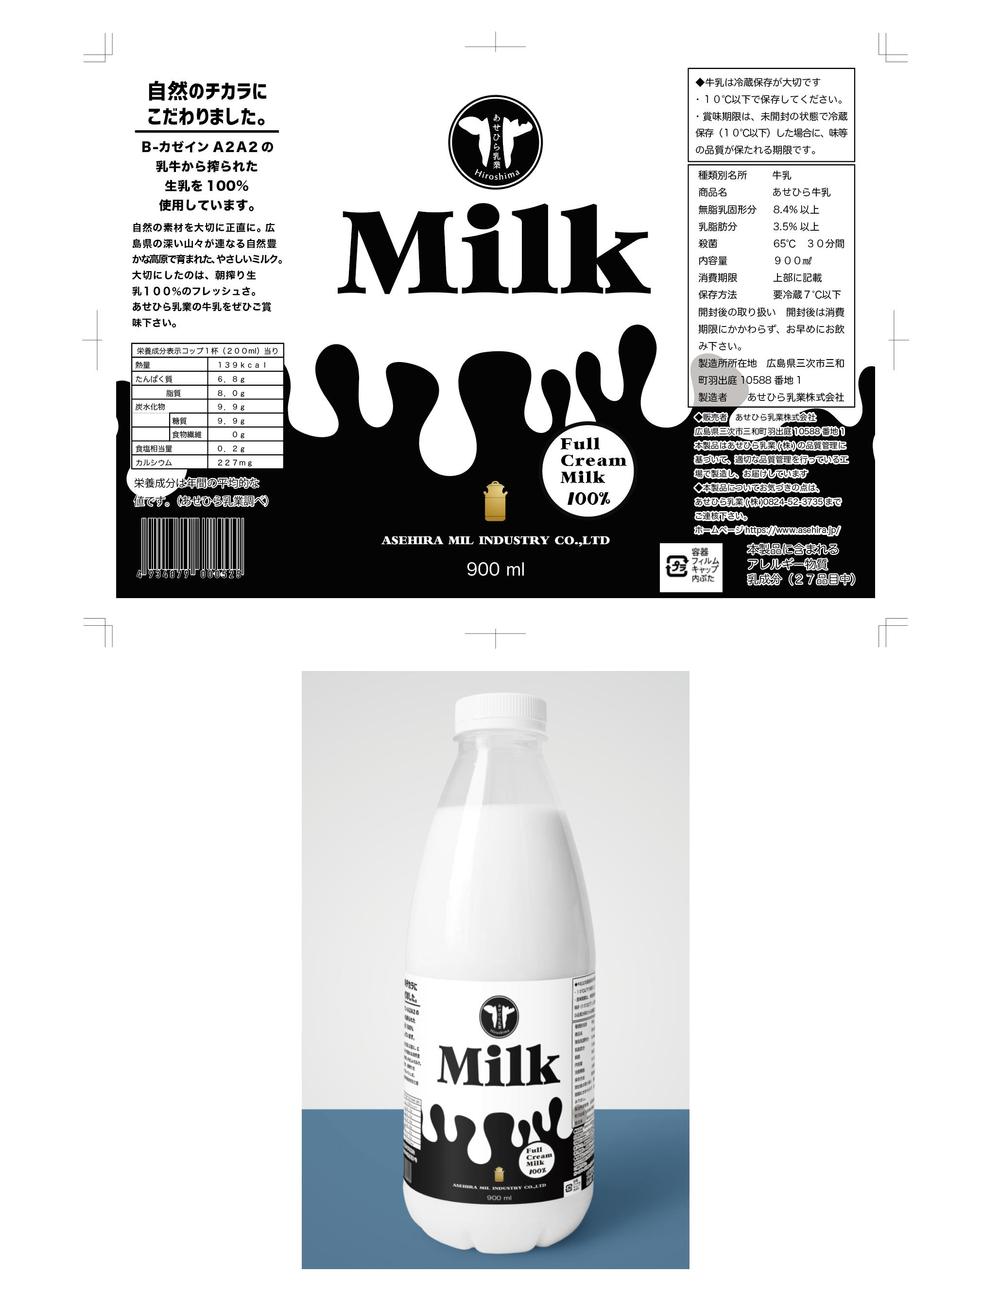 乳業メーカーの新作牛乳販売の為のパッケージデザイン